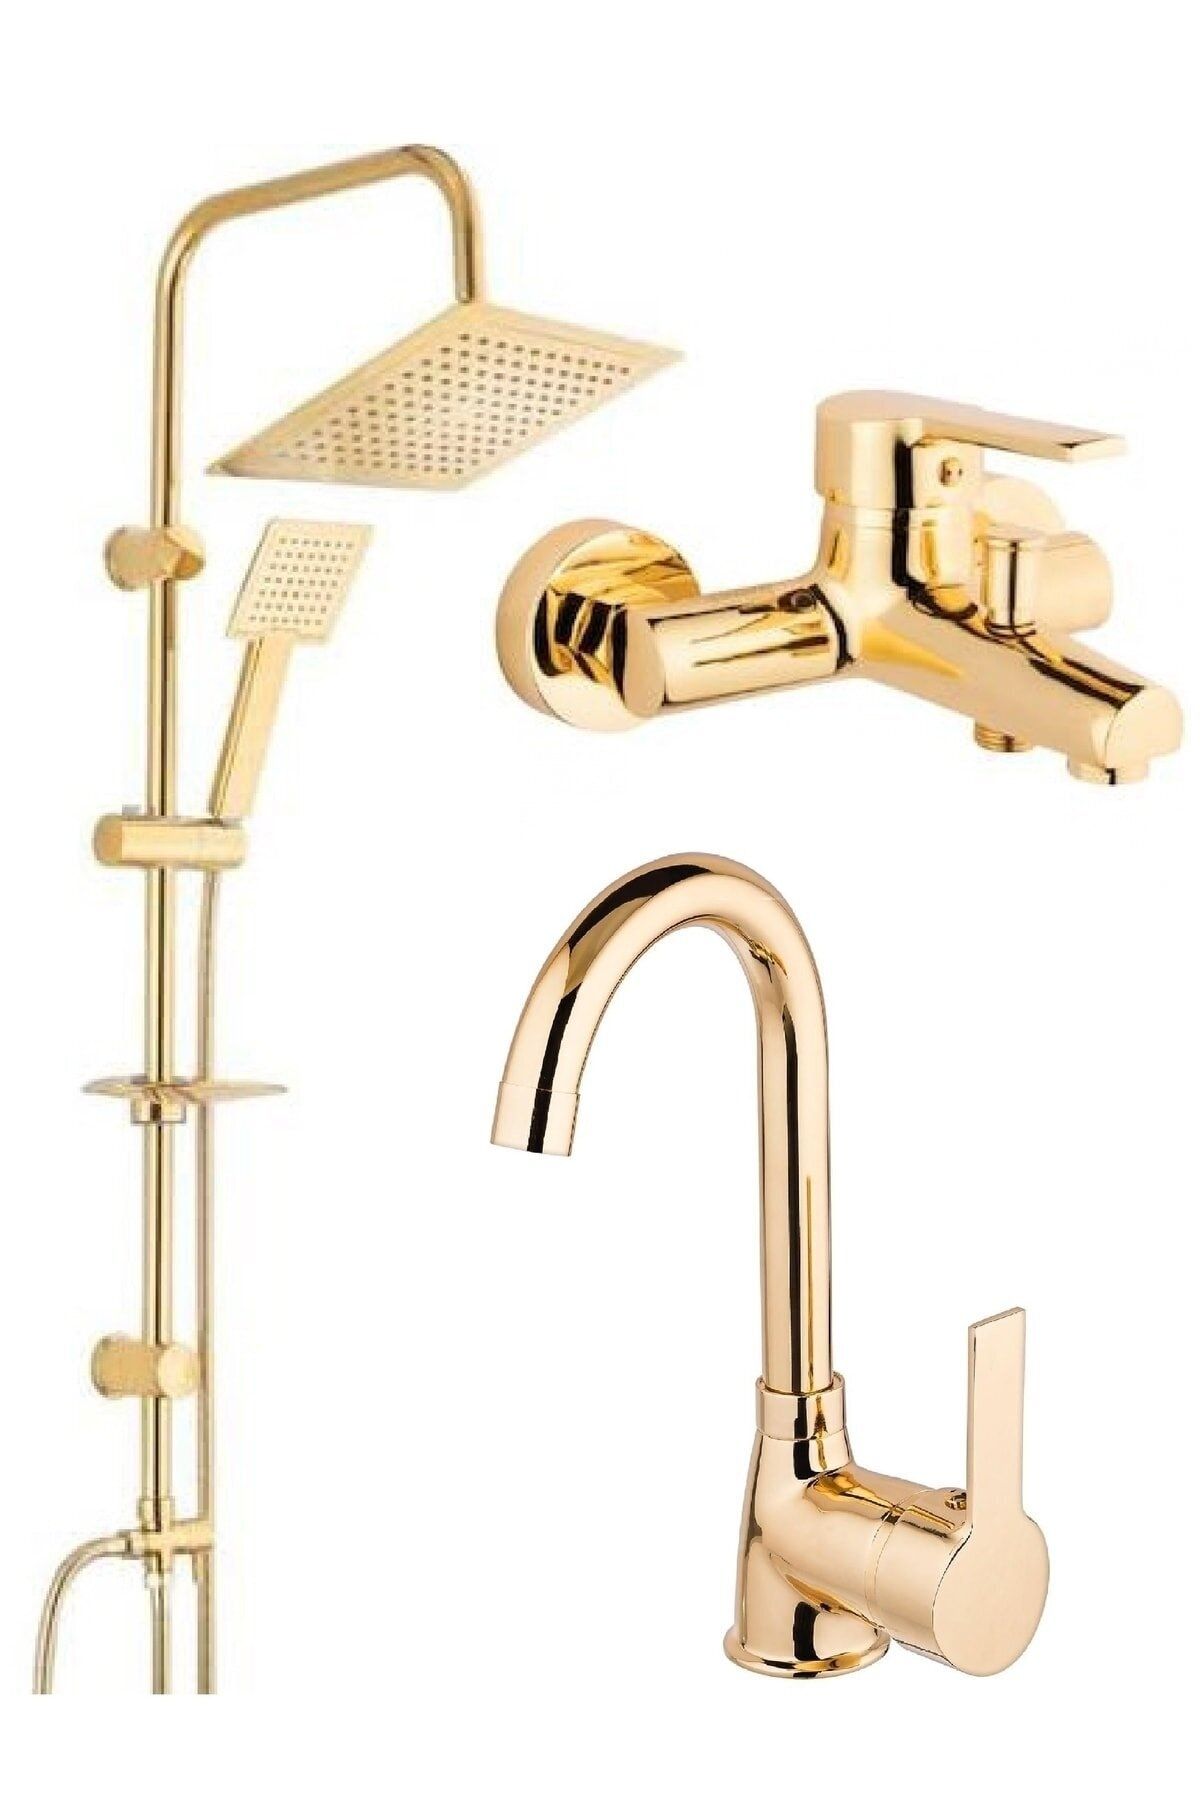 AYLA STAND Gold Altın Kare Robot Duş Seti, Lavabo Ve Banyo Bataryası Musluğu Çeşmesi 3'lü Set